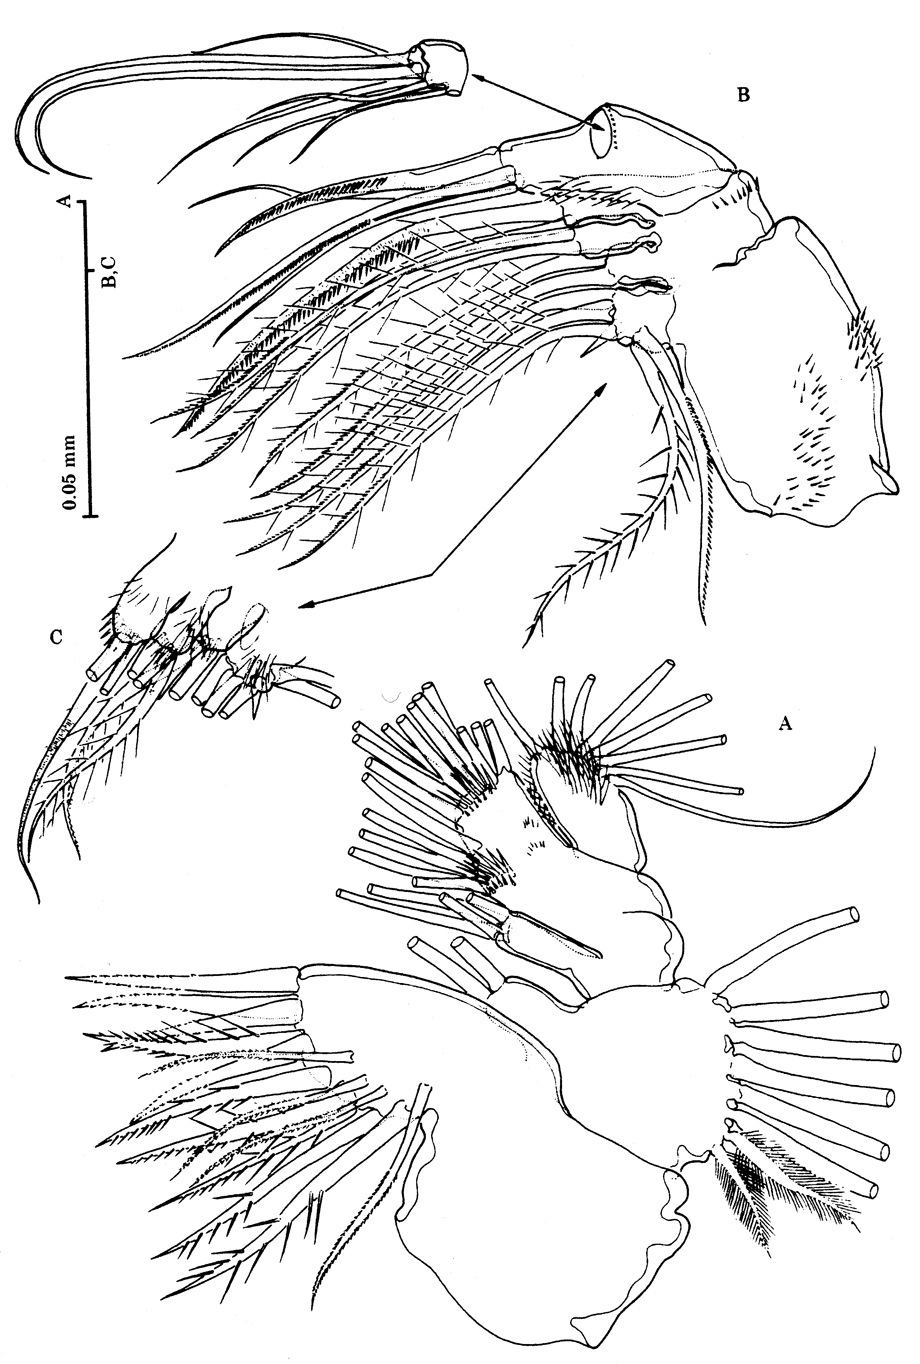 Espèce Stygocyclopia australis - Planche 5 de figures morphologiques